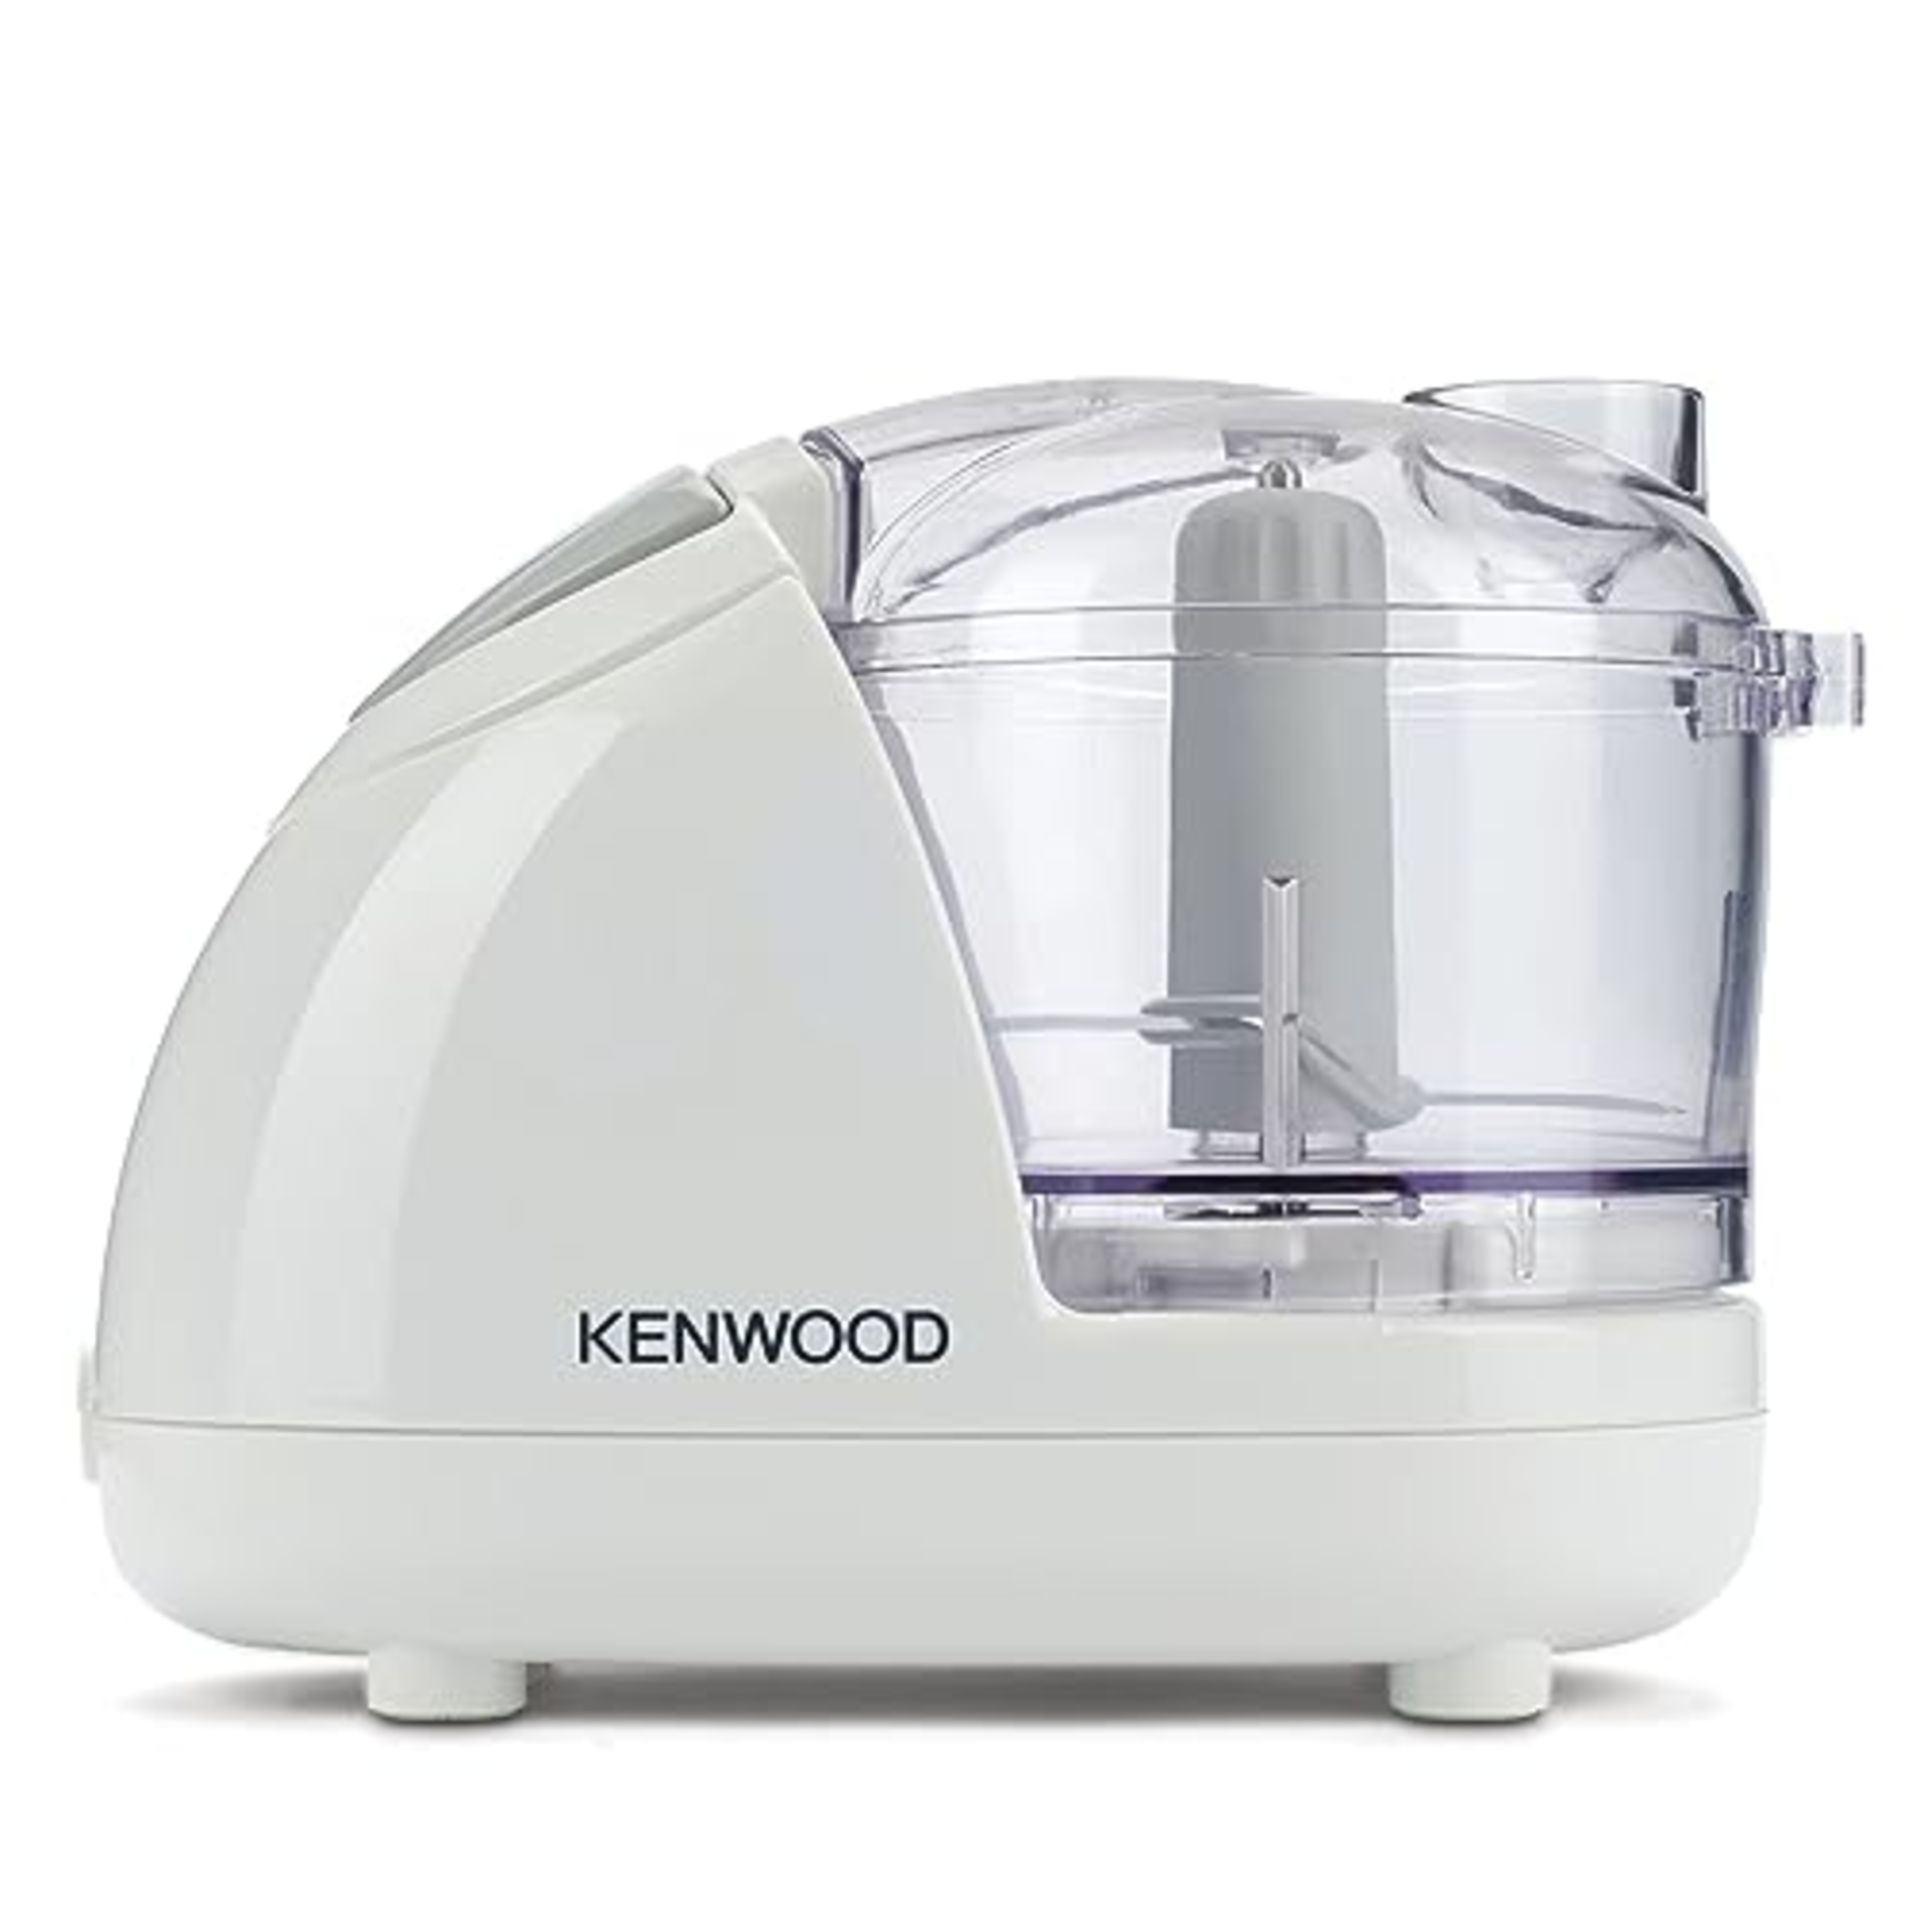 Kenwood Mini Chopper, 0.35 Litre Dishwasher Safe Bowl, 2 Speeds, Rubber Feet for Food